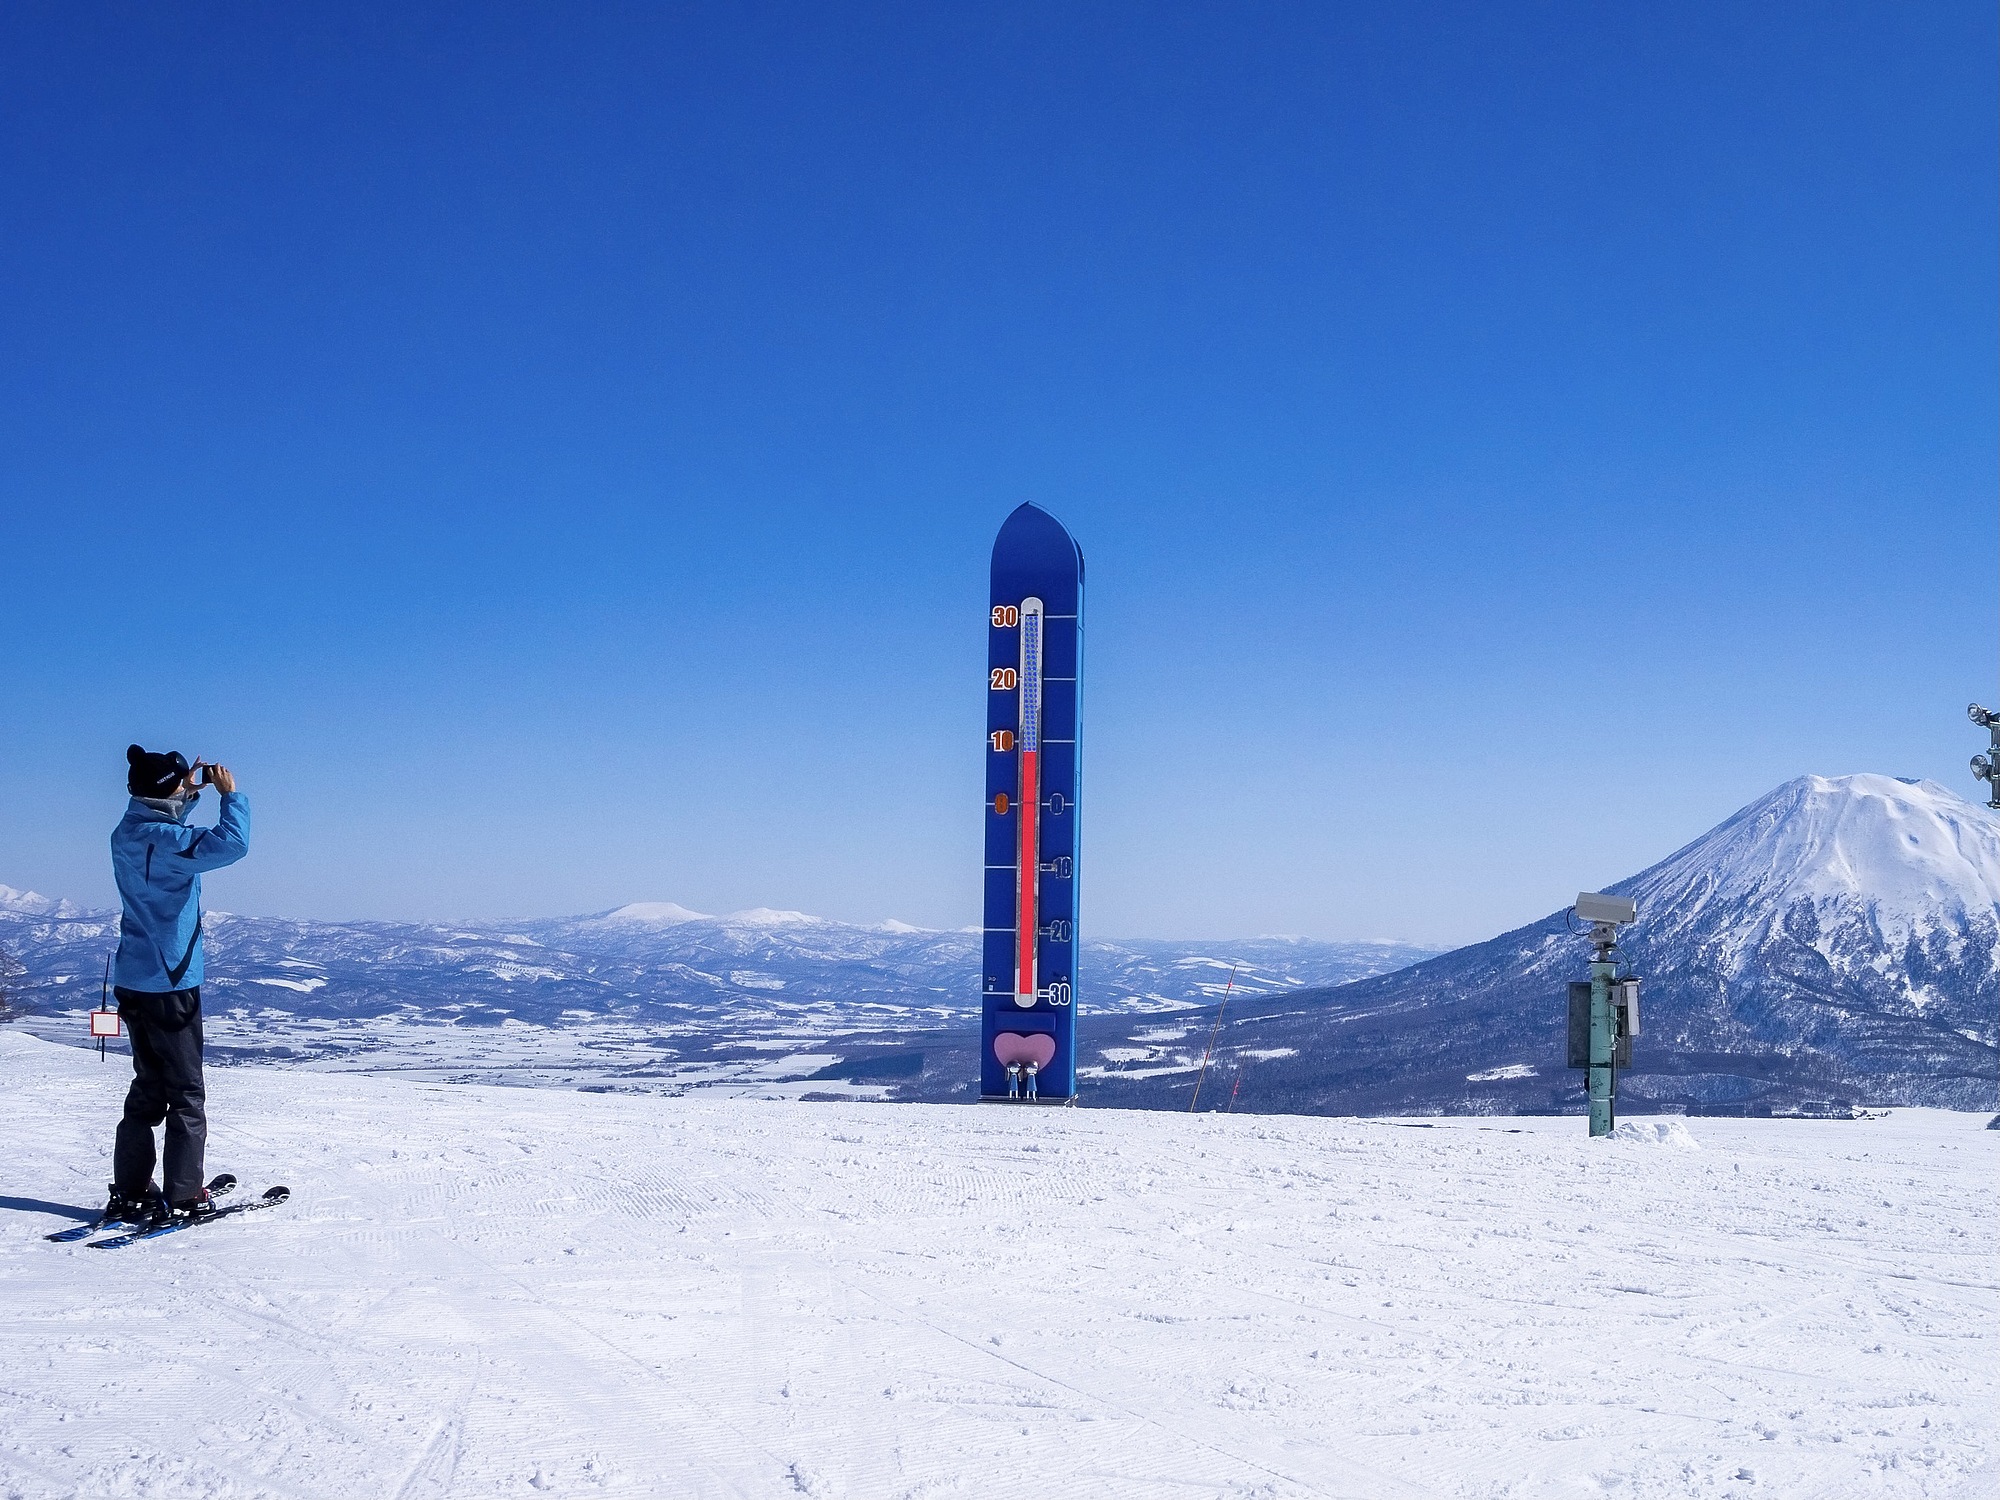 スキー場リフト割引券3枚ニセコ東急 グラン・ヒラフ ハンター